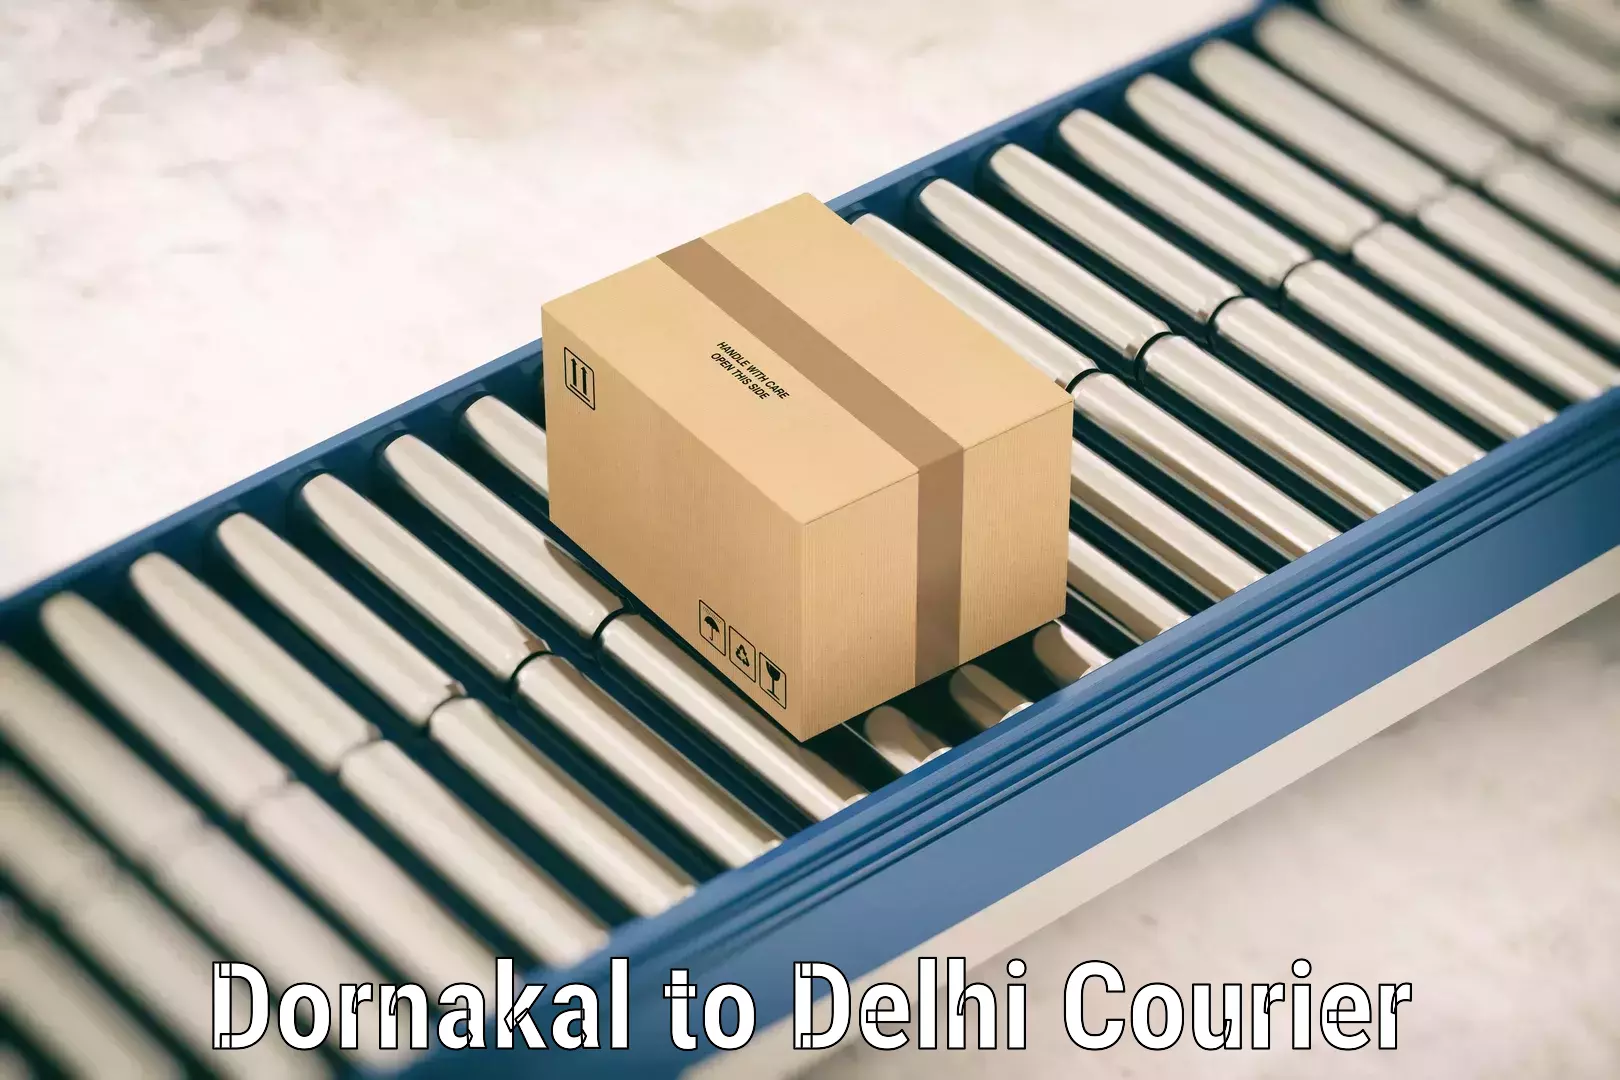 Baggage transport scheduler Dornakal to NCR